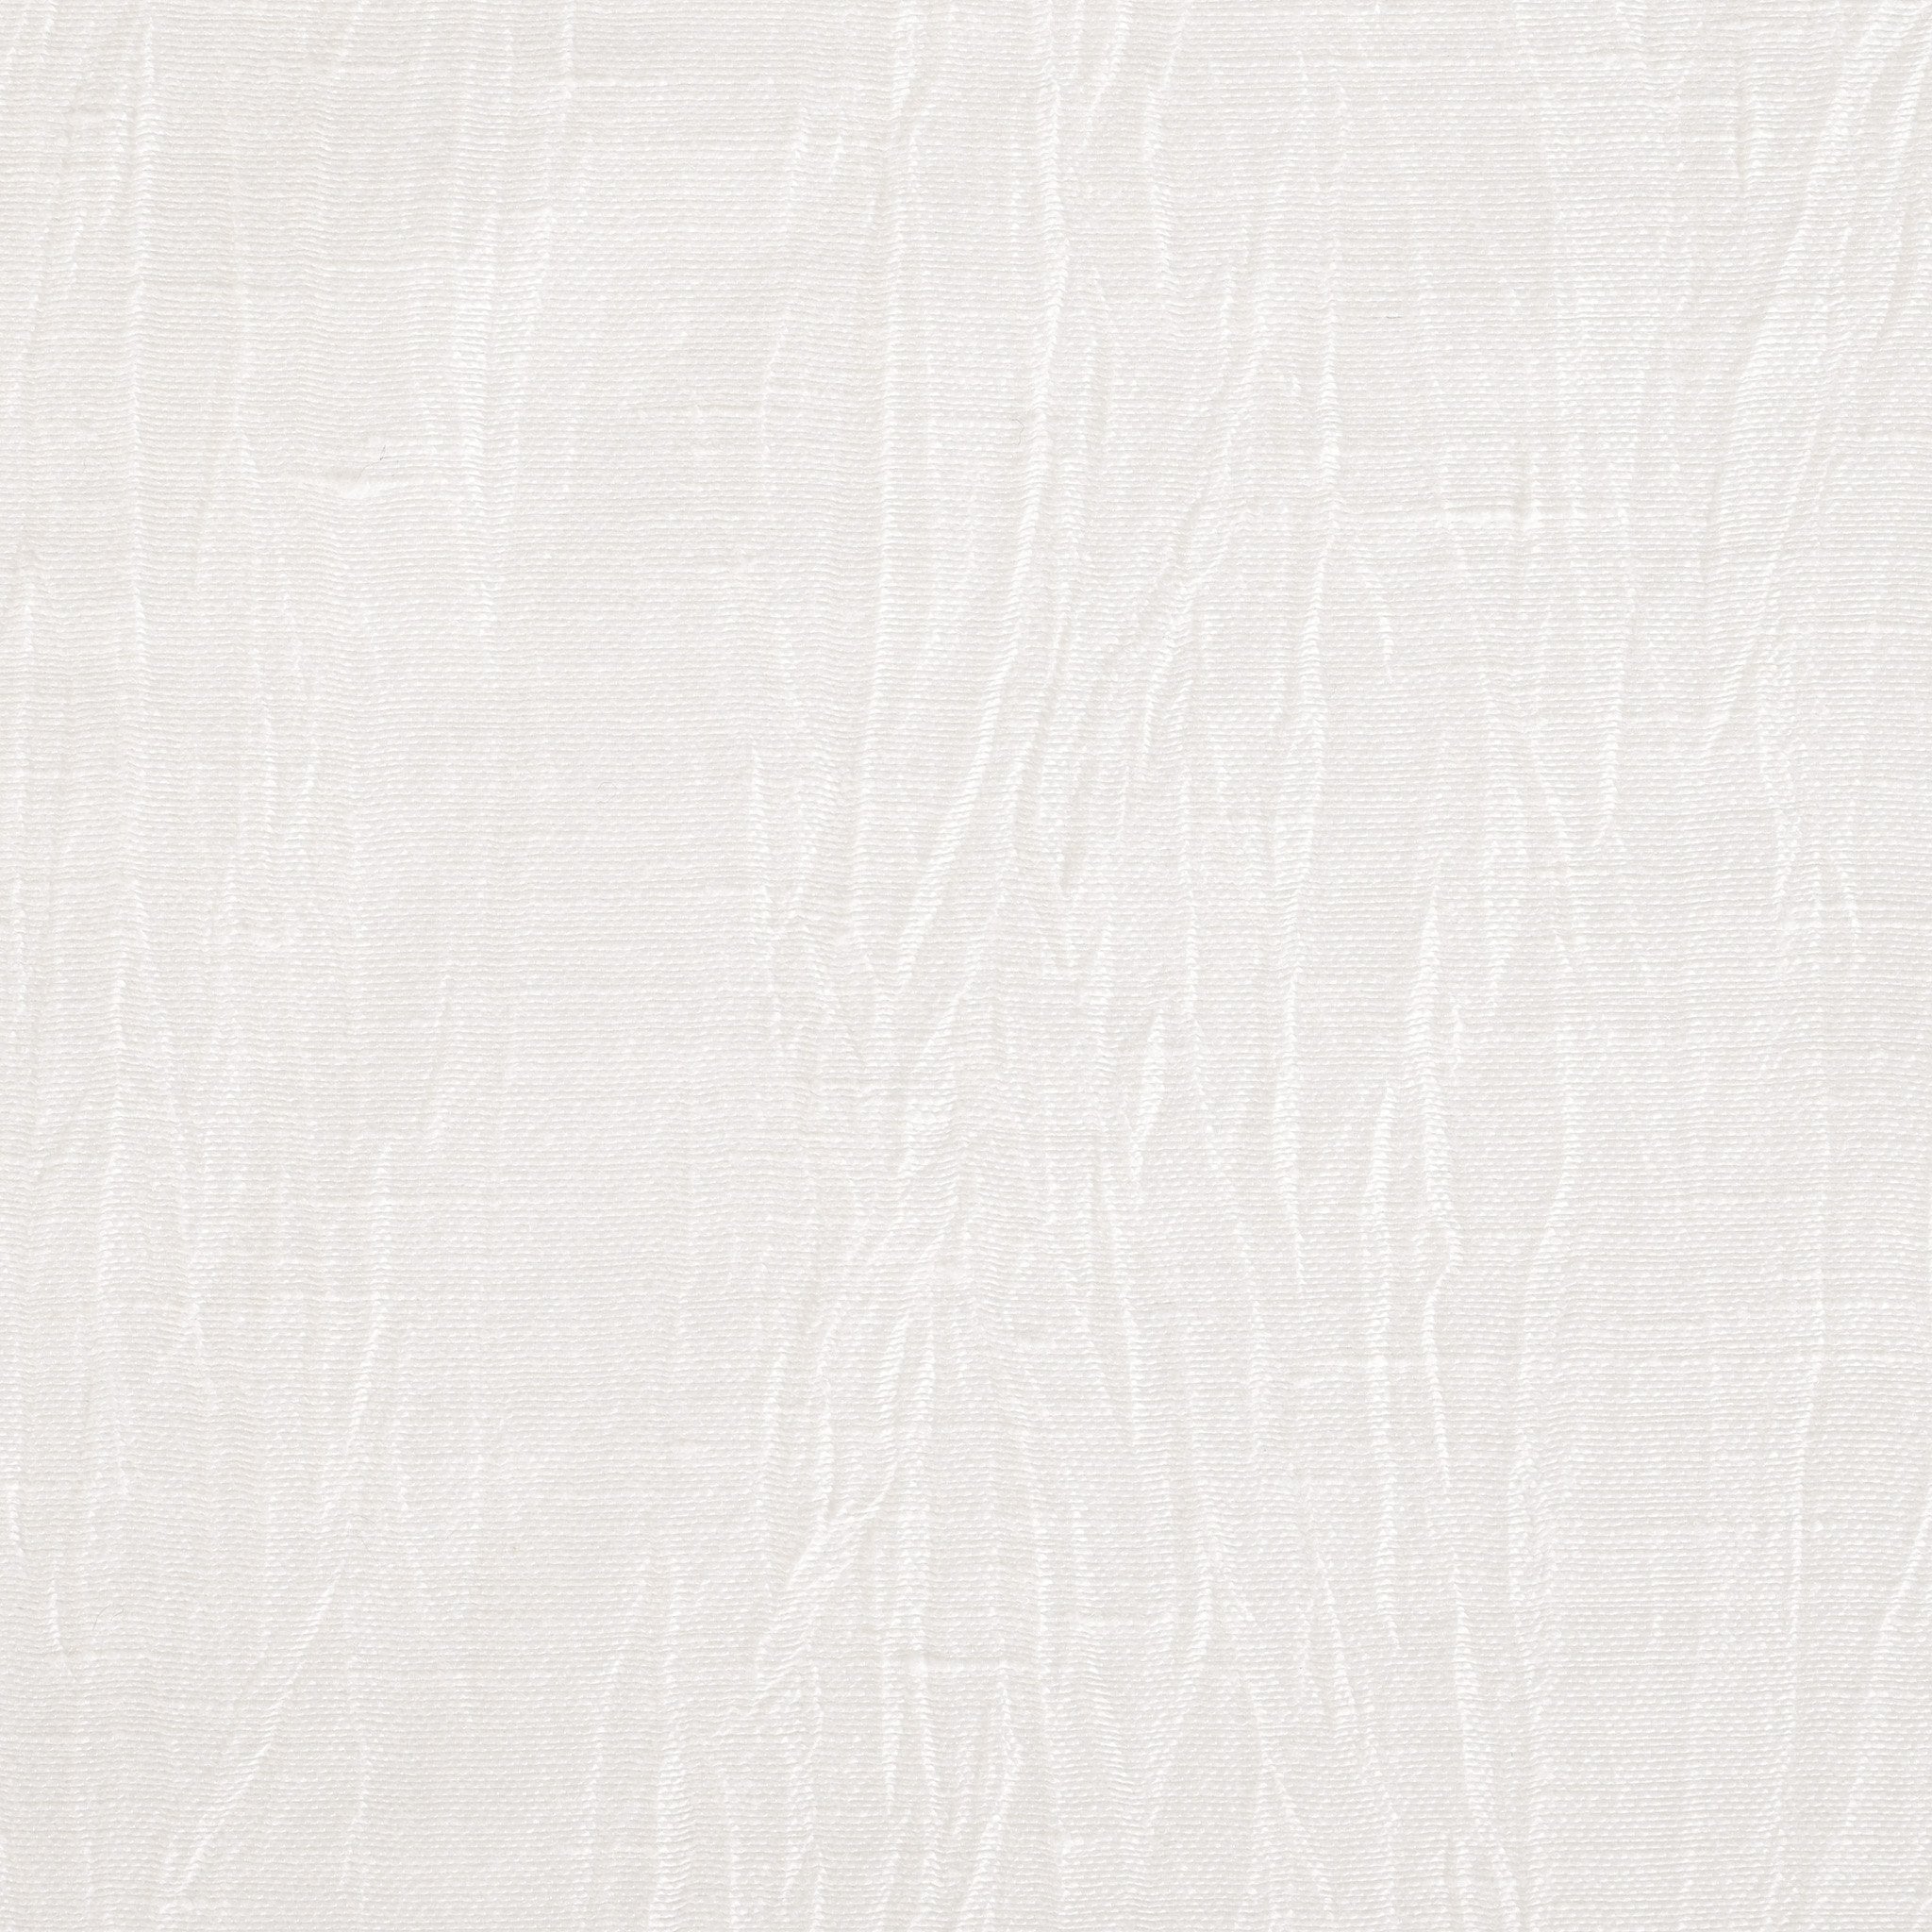 Ivory Crinkled Linen 619